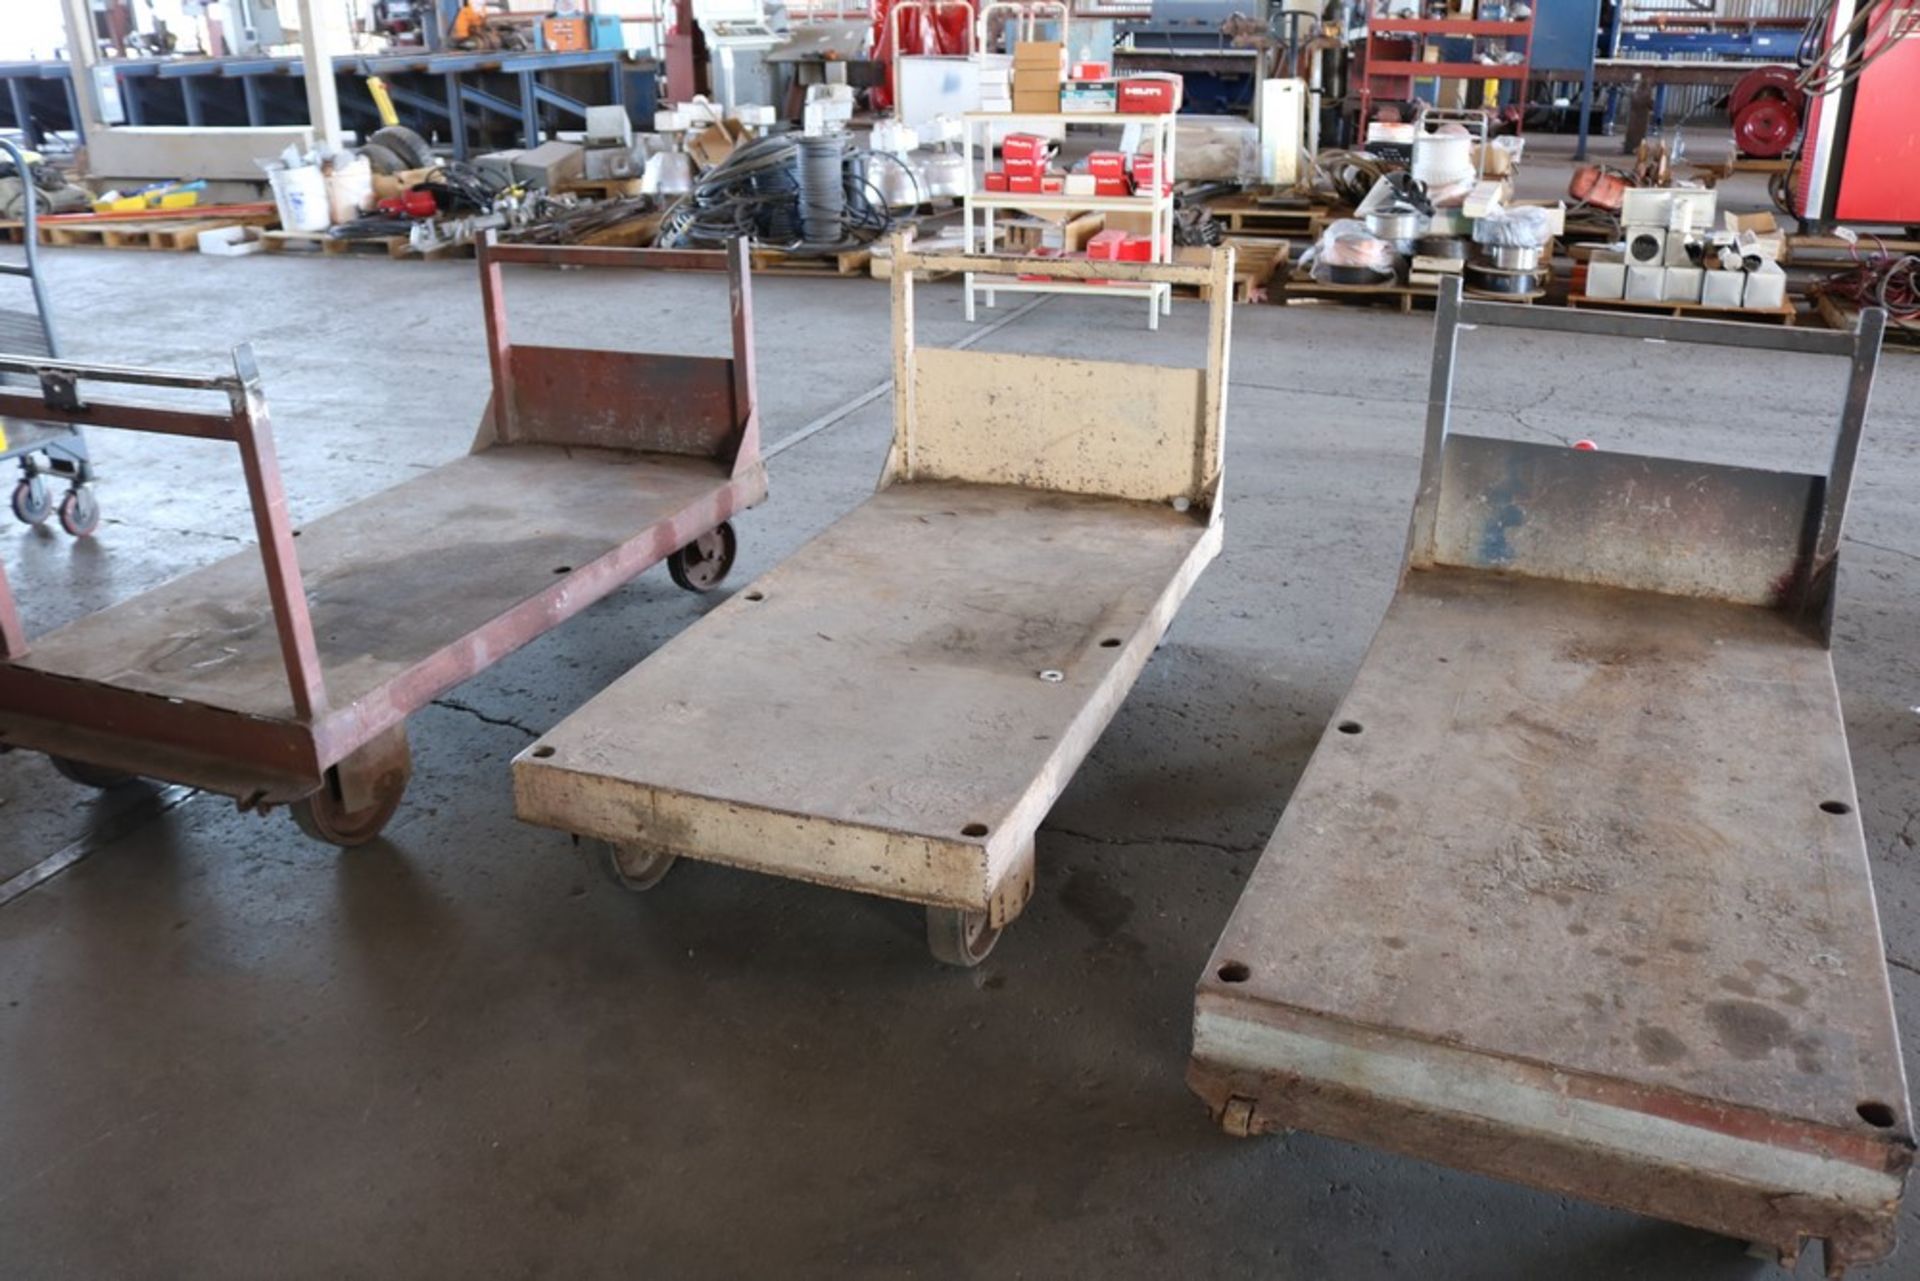 (3) heavy duty metal shop rolling carts